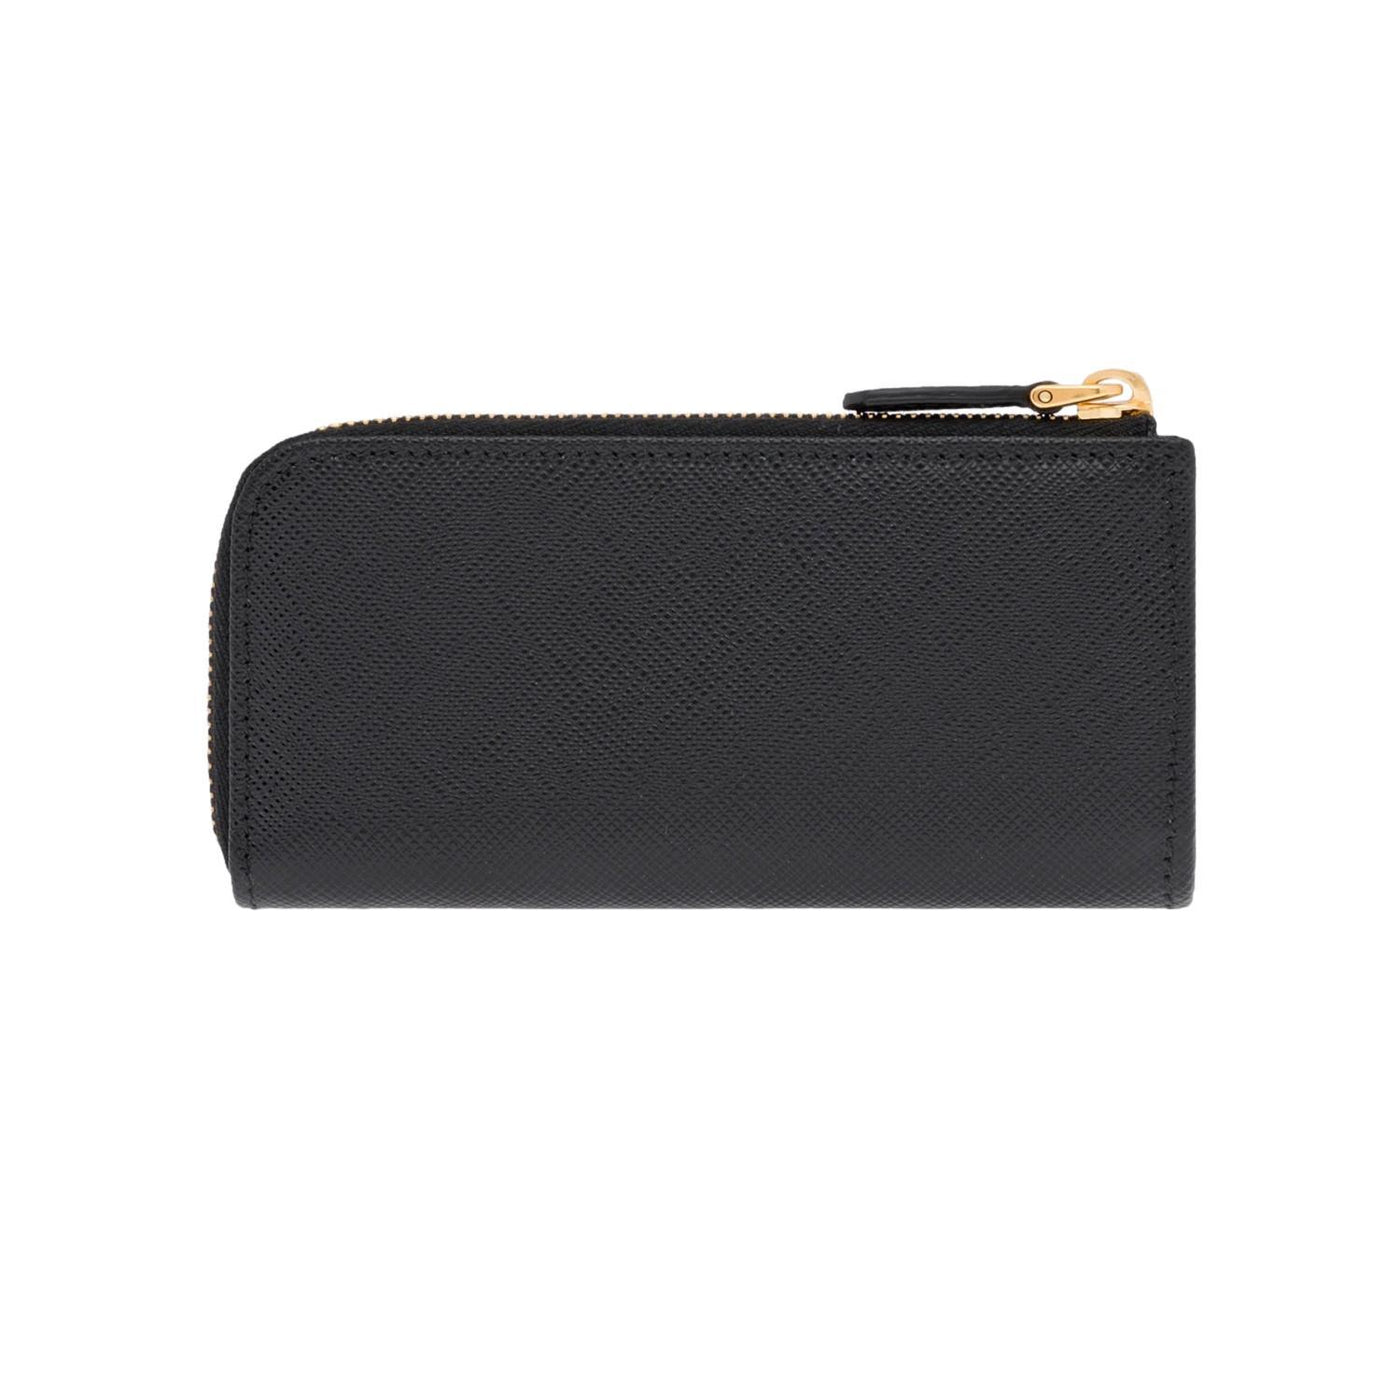 Prada Black Saffiano Leather Key Holder Pouch Wallet 1PP026 - LUXURYMRKT